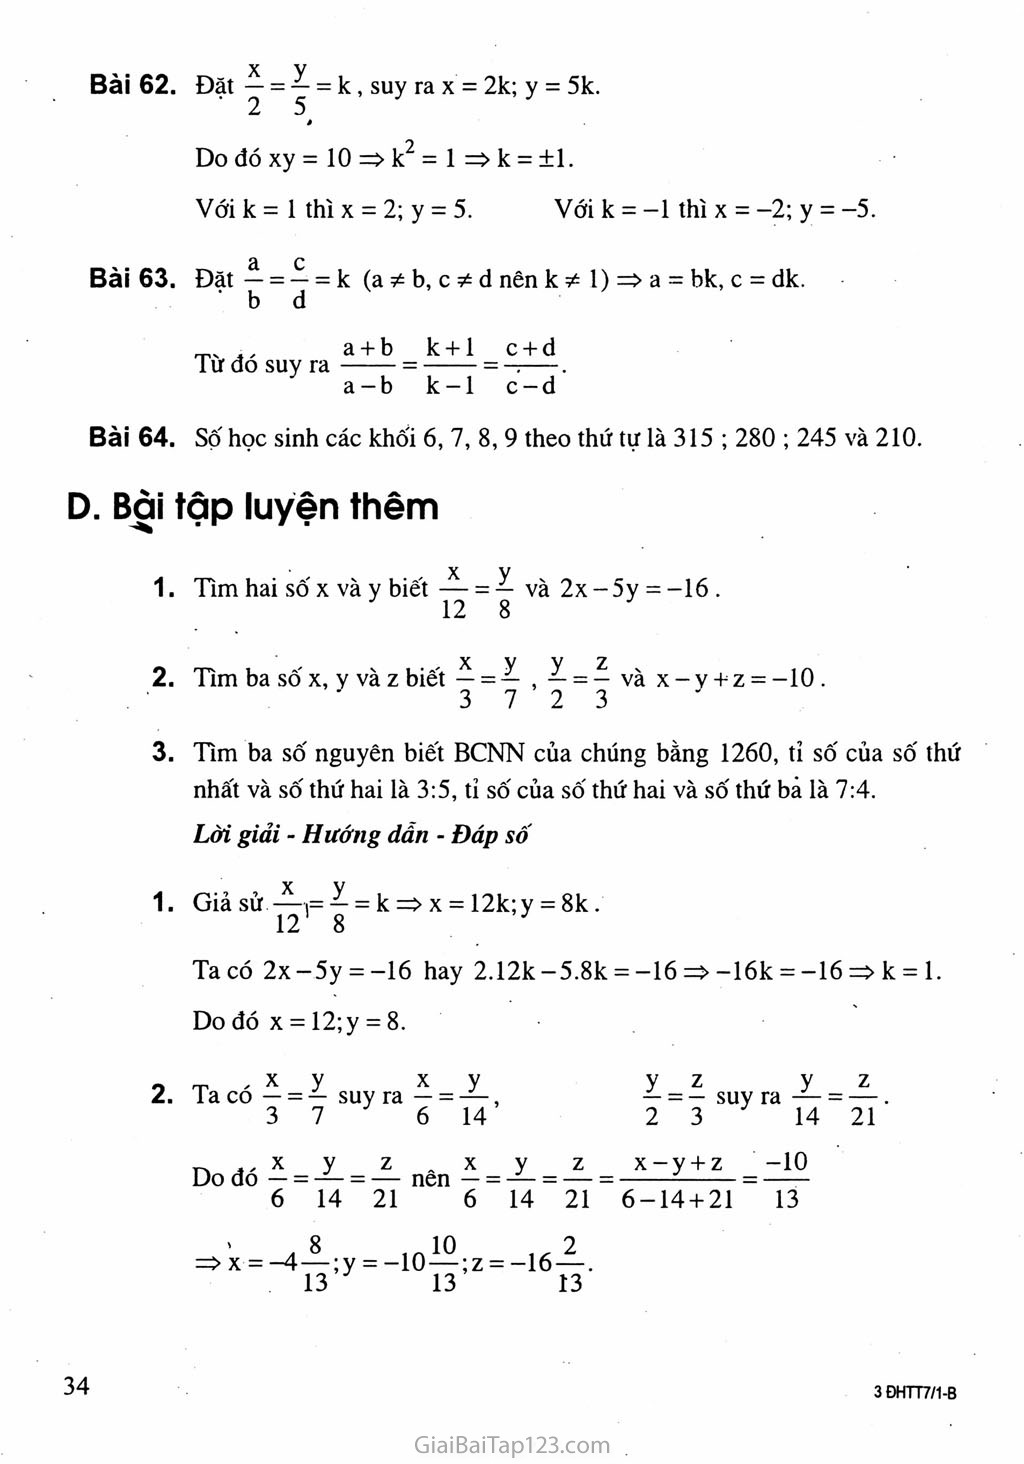 Bài 8. Tính chất của dãy tỉ số bằng nhau trang 4